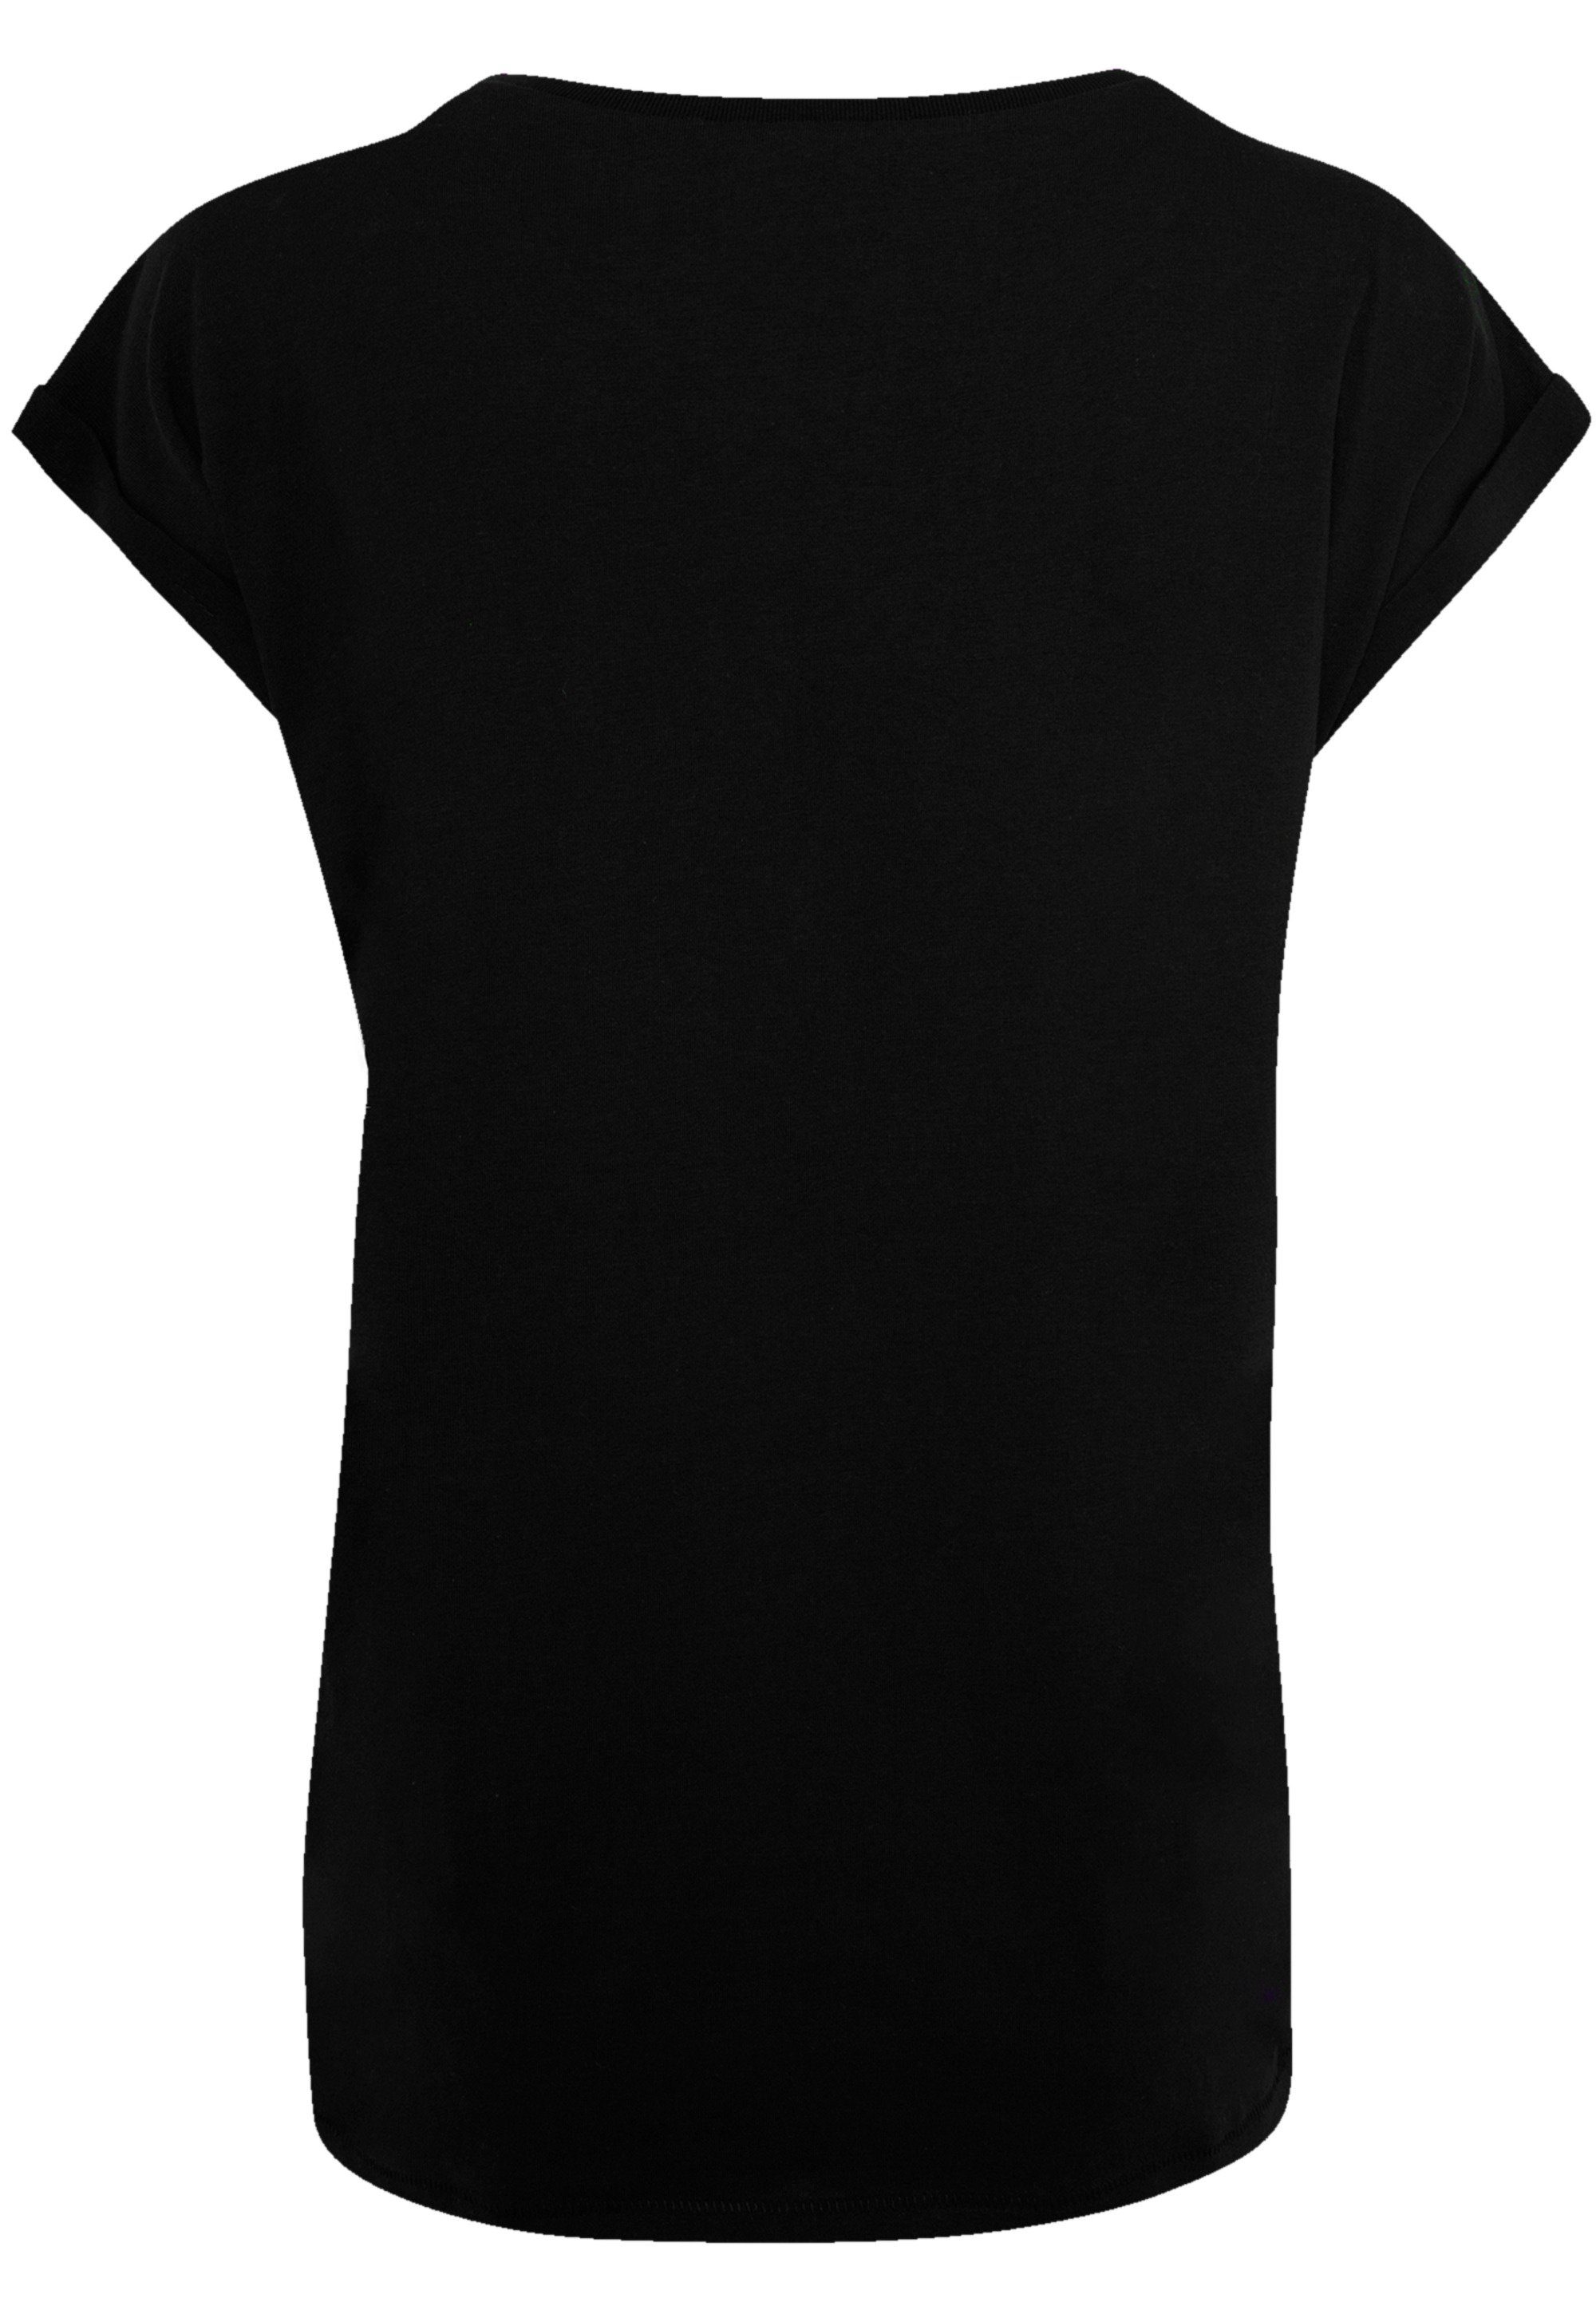 Qualität Premium F4NT4STIC T-Shirt Wars schwarz Star Turmoil